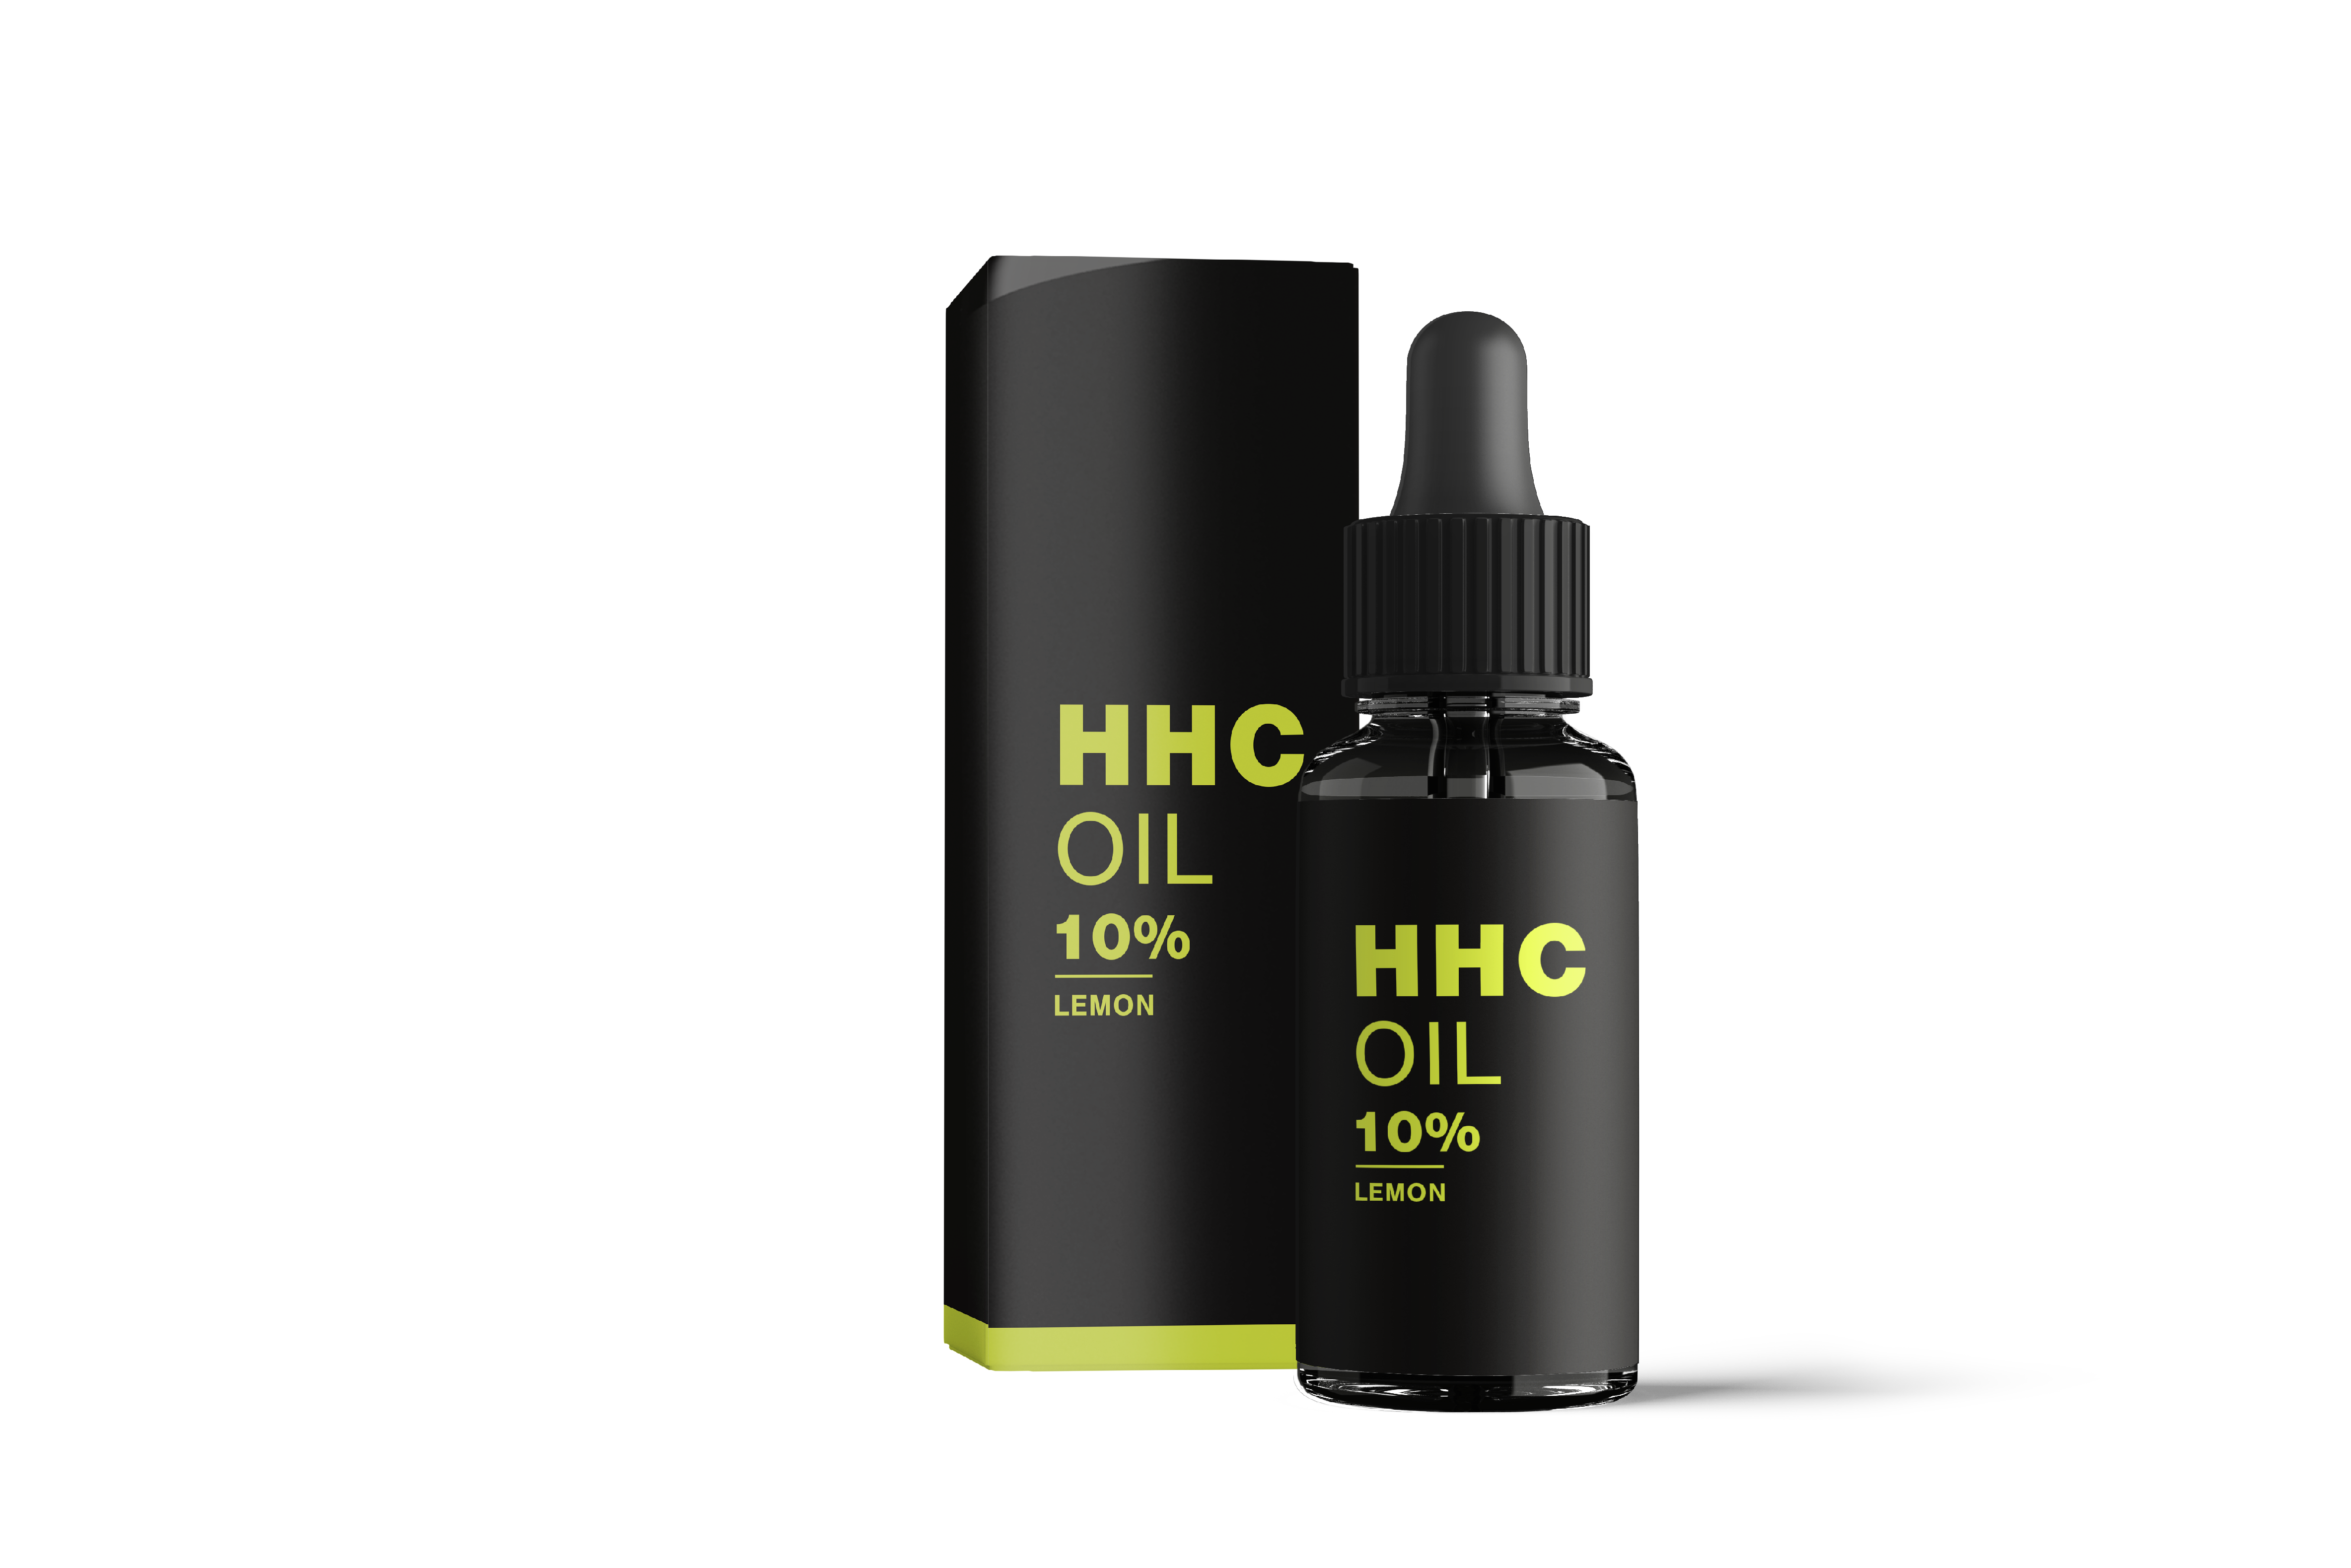 HHC Oil Lemon 10%